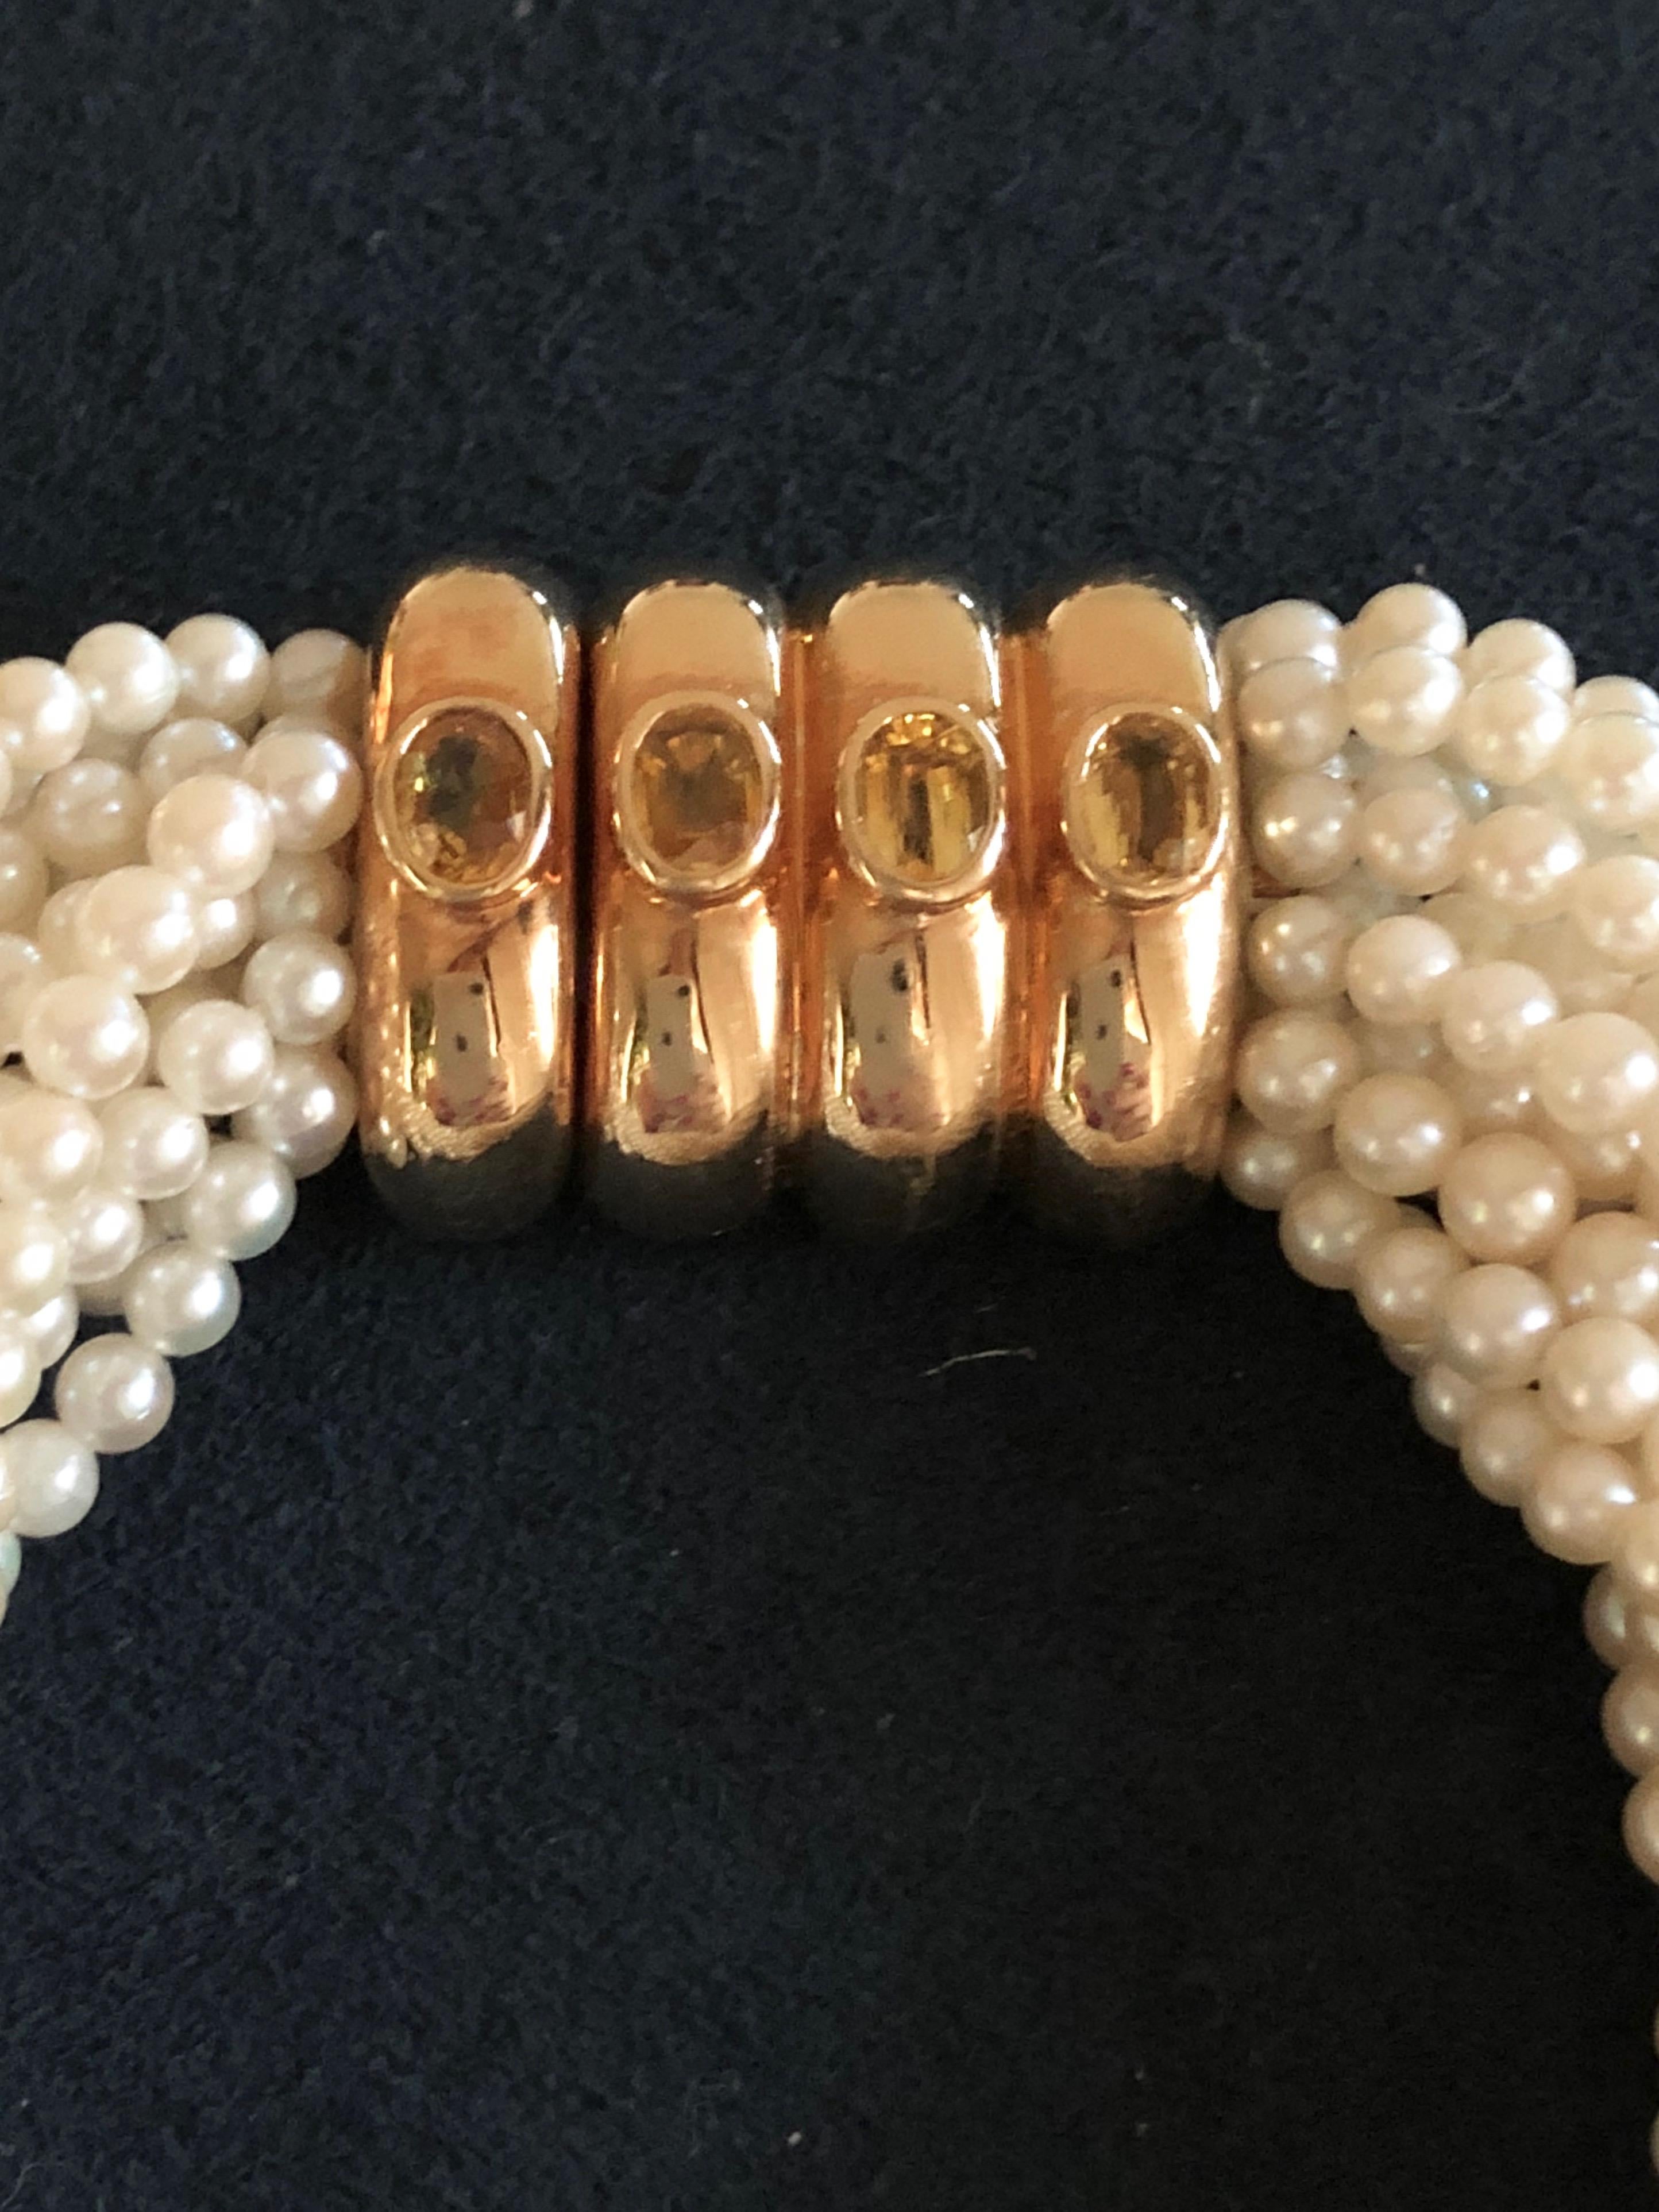 Elegantes und raffiniertes Torsade-Armband aus 14 Strängen von Akoya-Perlen. 
Mit einer 4-Band-Schließe aus 18 Karat Gold mit der Herstellerbezeichnung Poiray. 
Länge: 21,5 cm
Zustand: Sehr gut
Im Lieferumfang enthalten: Original Poiray-Beutel